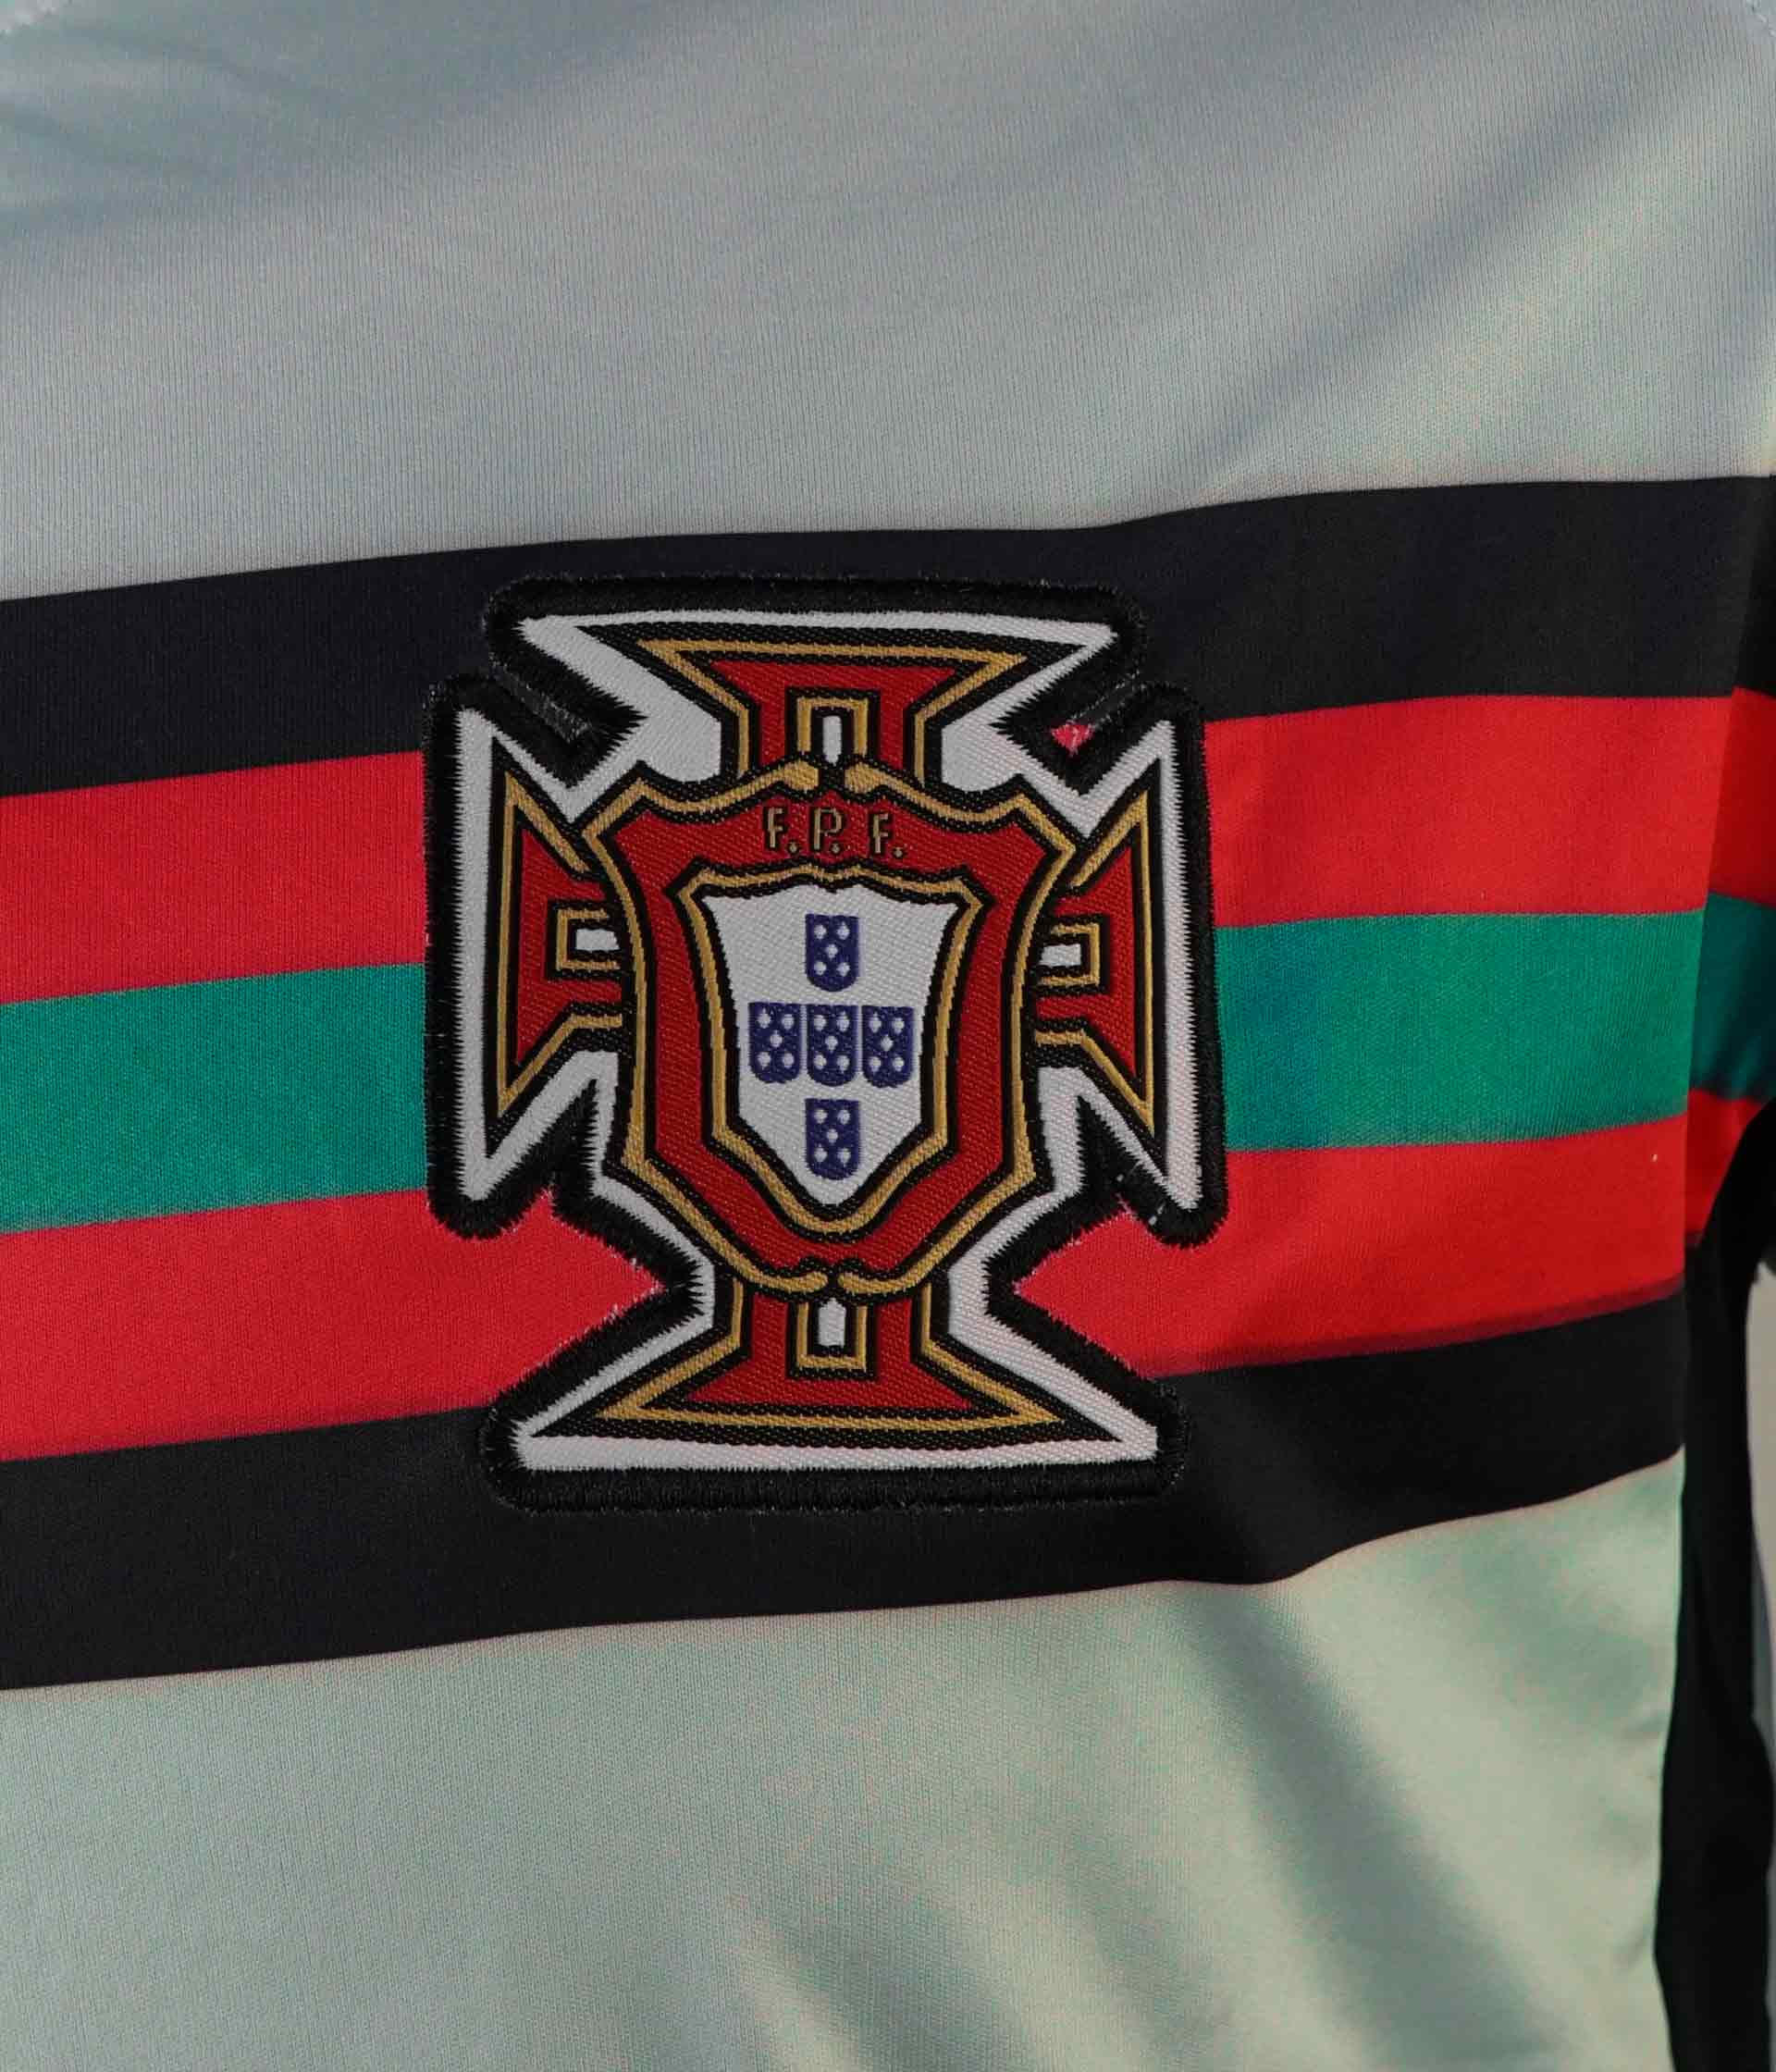 Áo thiết kế đẹp mắt, chất lượng cao cùng với sự ủng hộ nhiệt tình từ các cổ động viên, giúp đội tuyển Bồ Đào Nha trở thành một trong những ứng cử viên hàng đầu cho chức vô địch. Hãy đến và xem qua các hình ảnh về áo bóng đá đội tuyển Bồ Đào Nha để cảm nhận được sự đẳng cấp và phong cách của đội tuyển này.